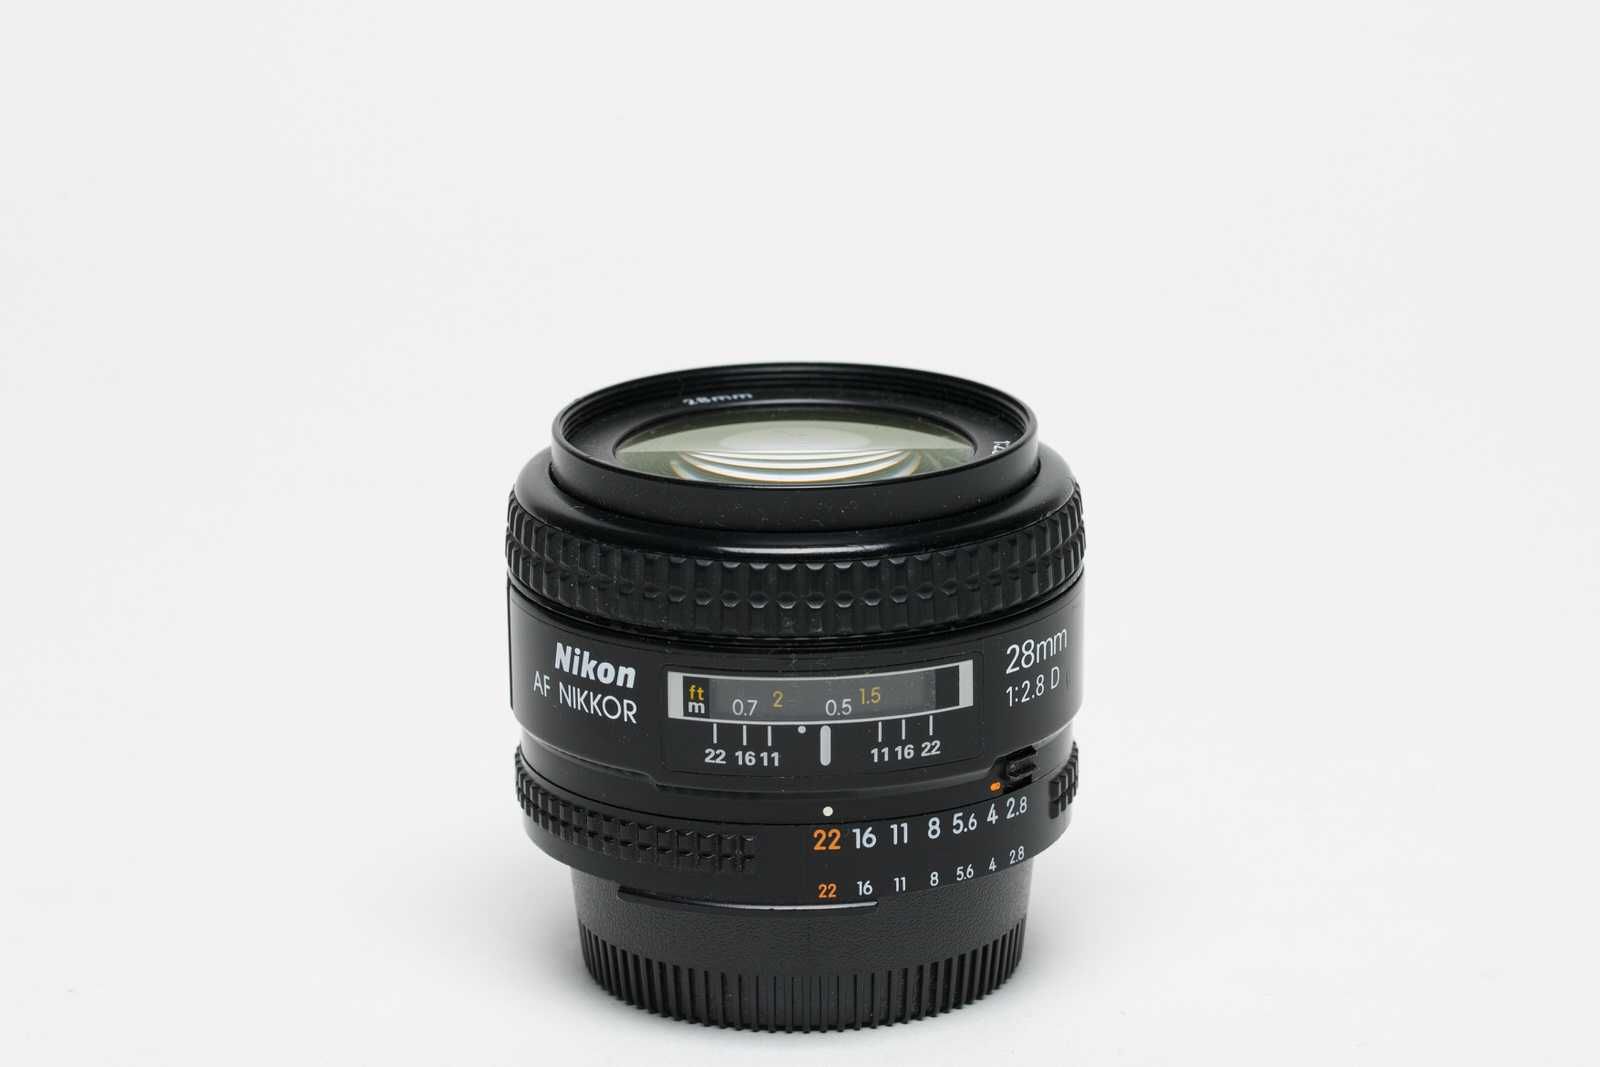 Objectiva Nikkor AF 28mm f/2.8 D